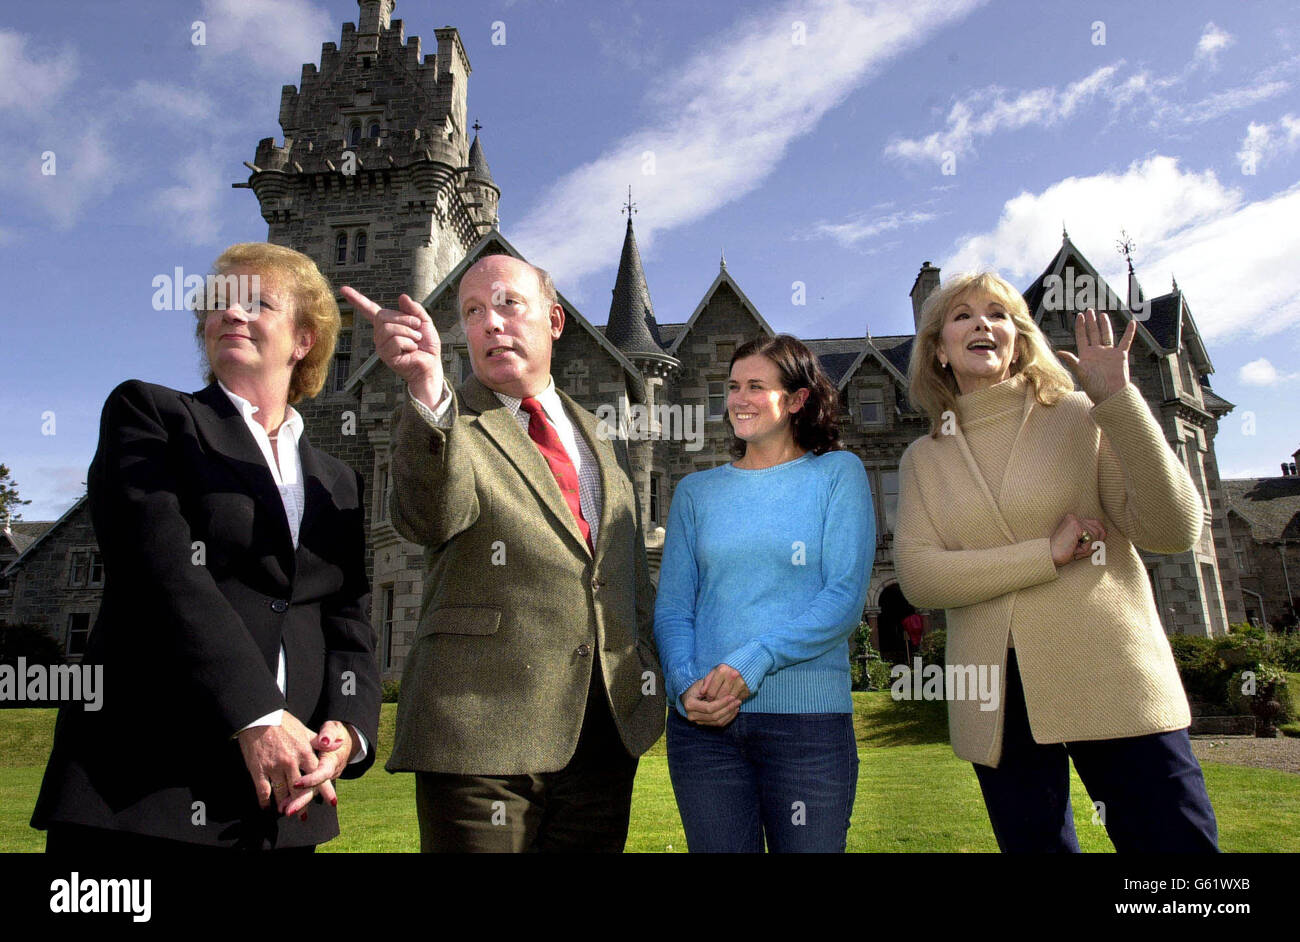 Da sinistra - il segretario scozzese Helen Liddell incontra i membri del cast Julian Fellows, Dawn Steele e Susan Hampshire durante una visita al set della serie della BBC Monarch of the Glen, girato vicino a Newtonmore nelle Highlands. Foto Stock